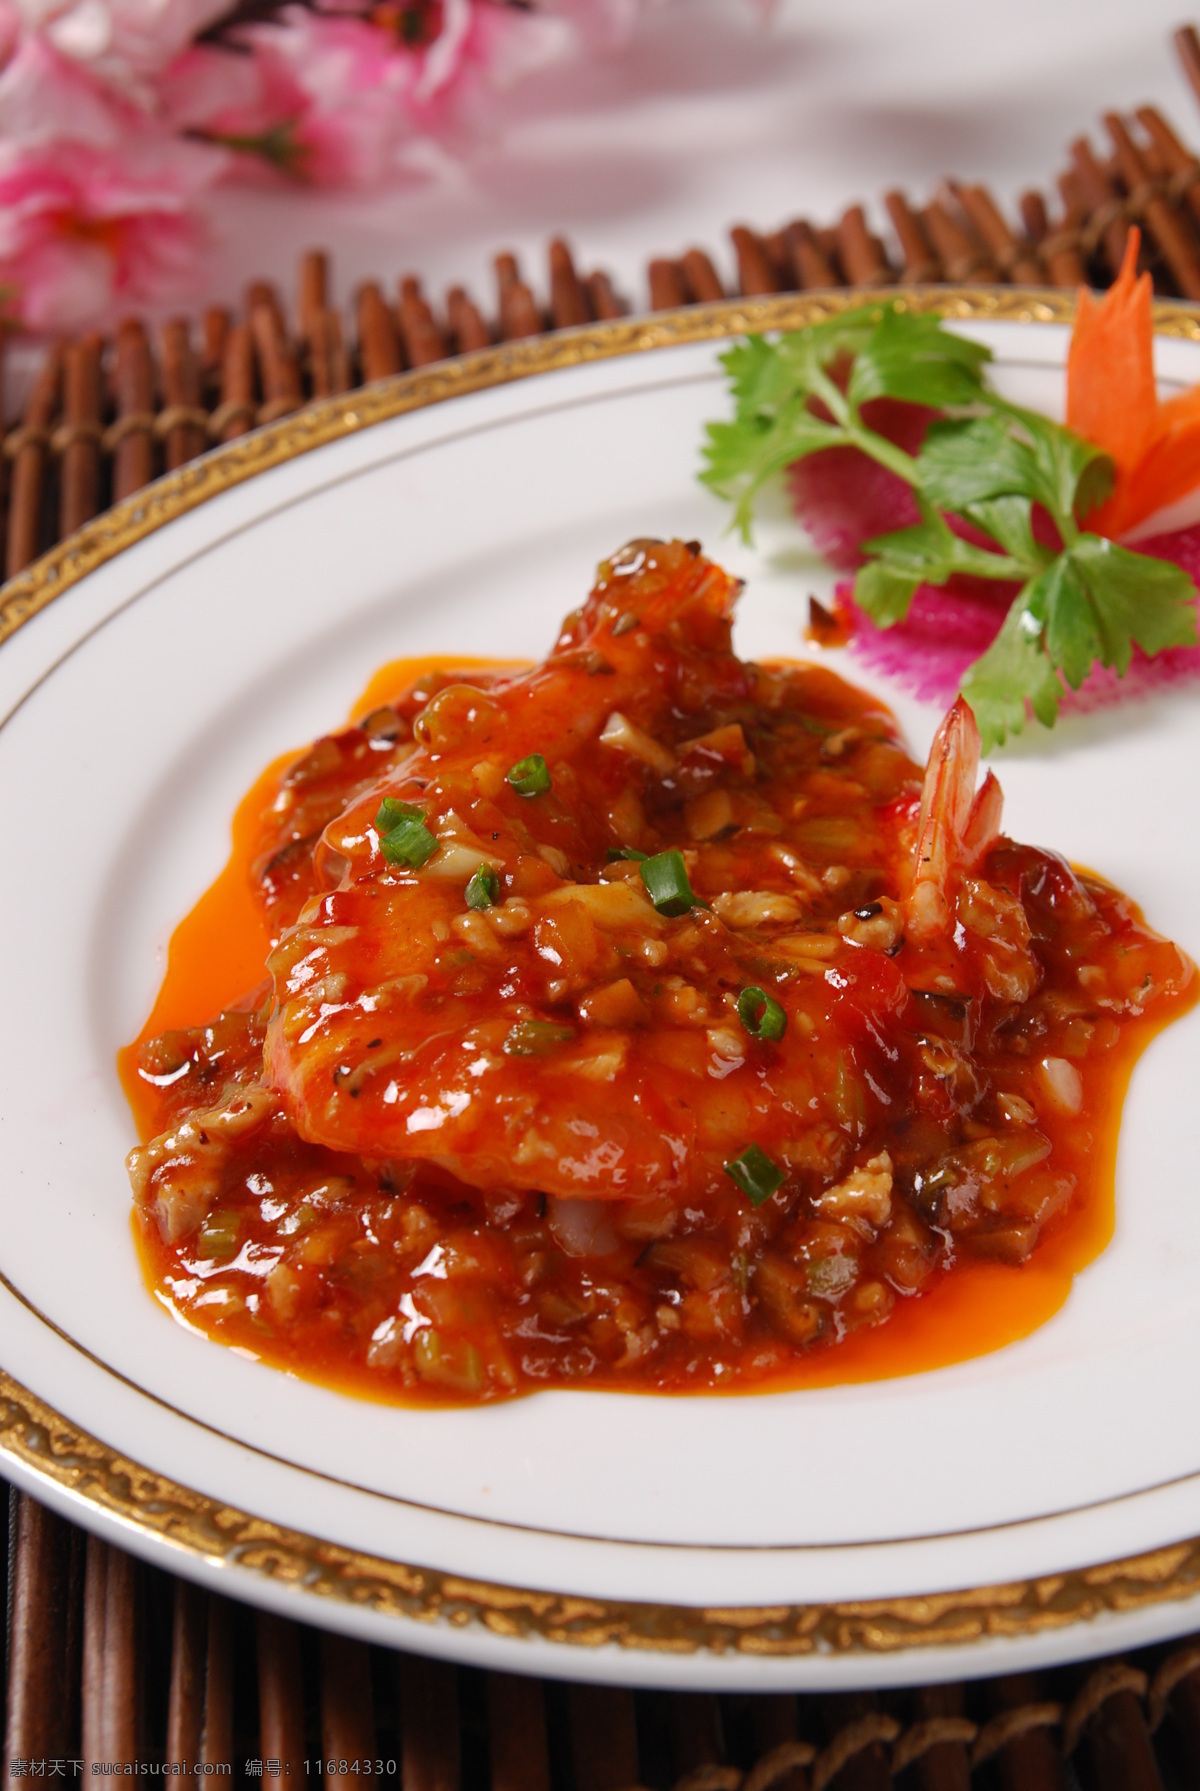 干烧大明虾 茄汁大明虾 大明虾 食物 传统美食 餐饮美食